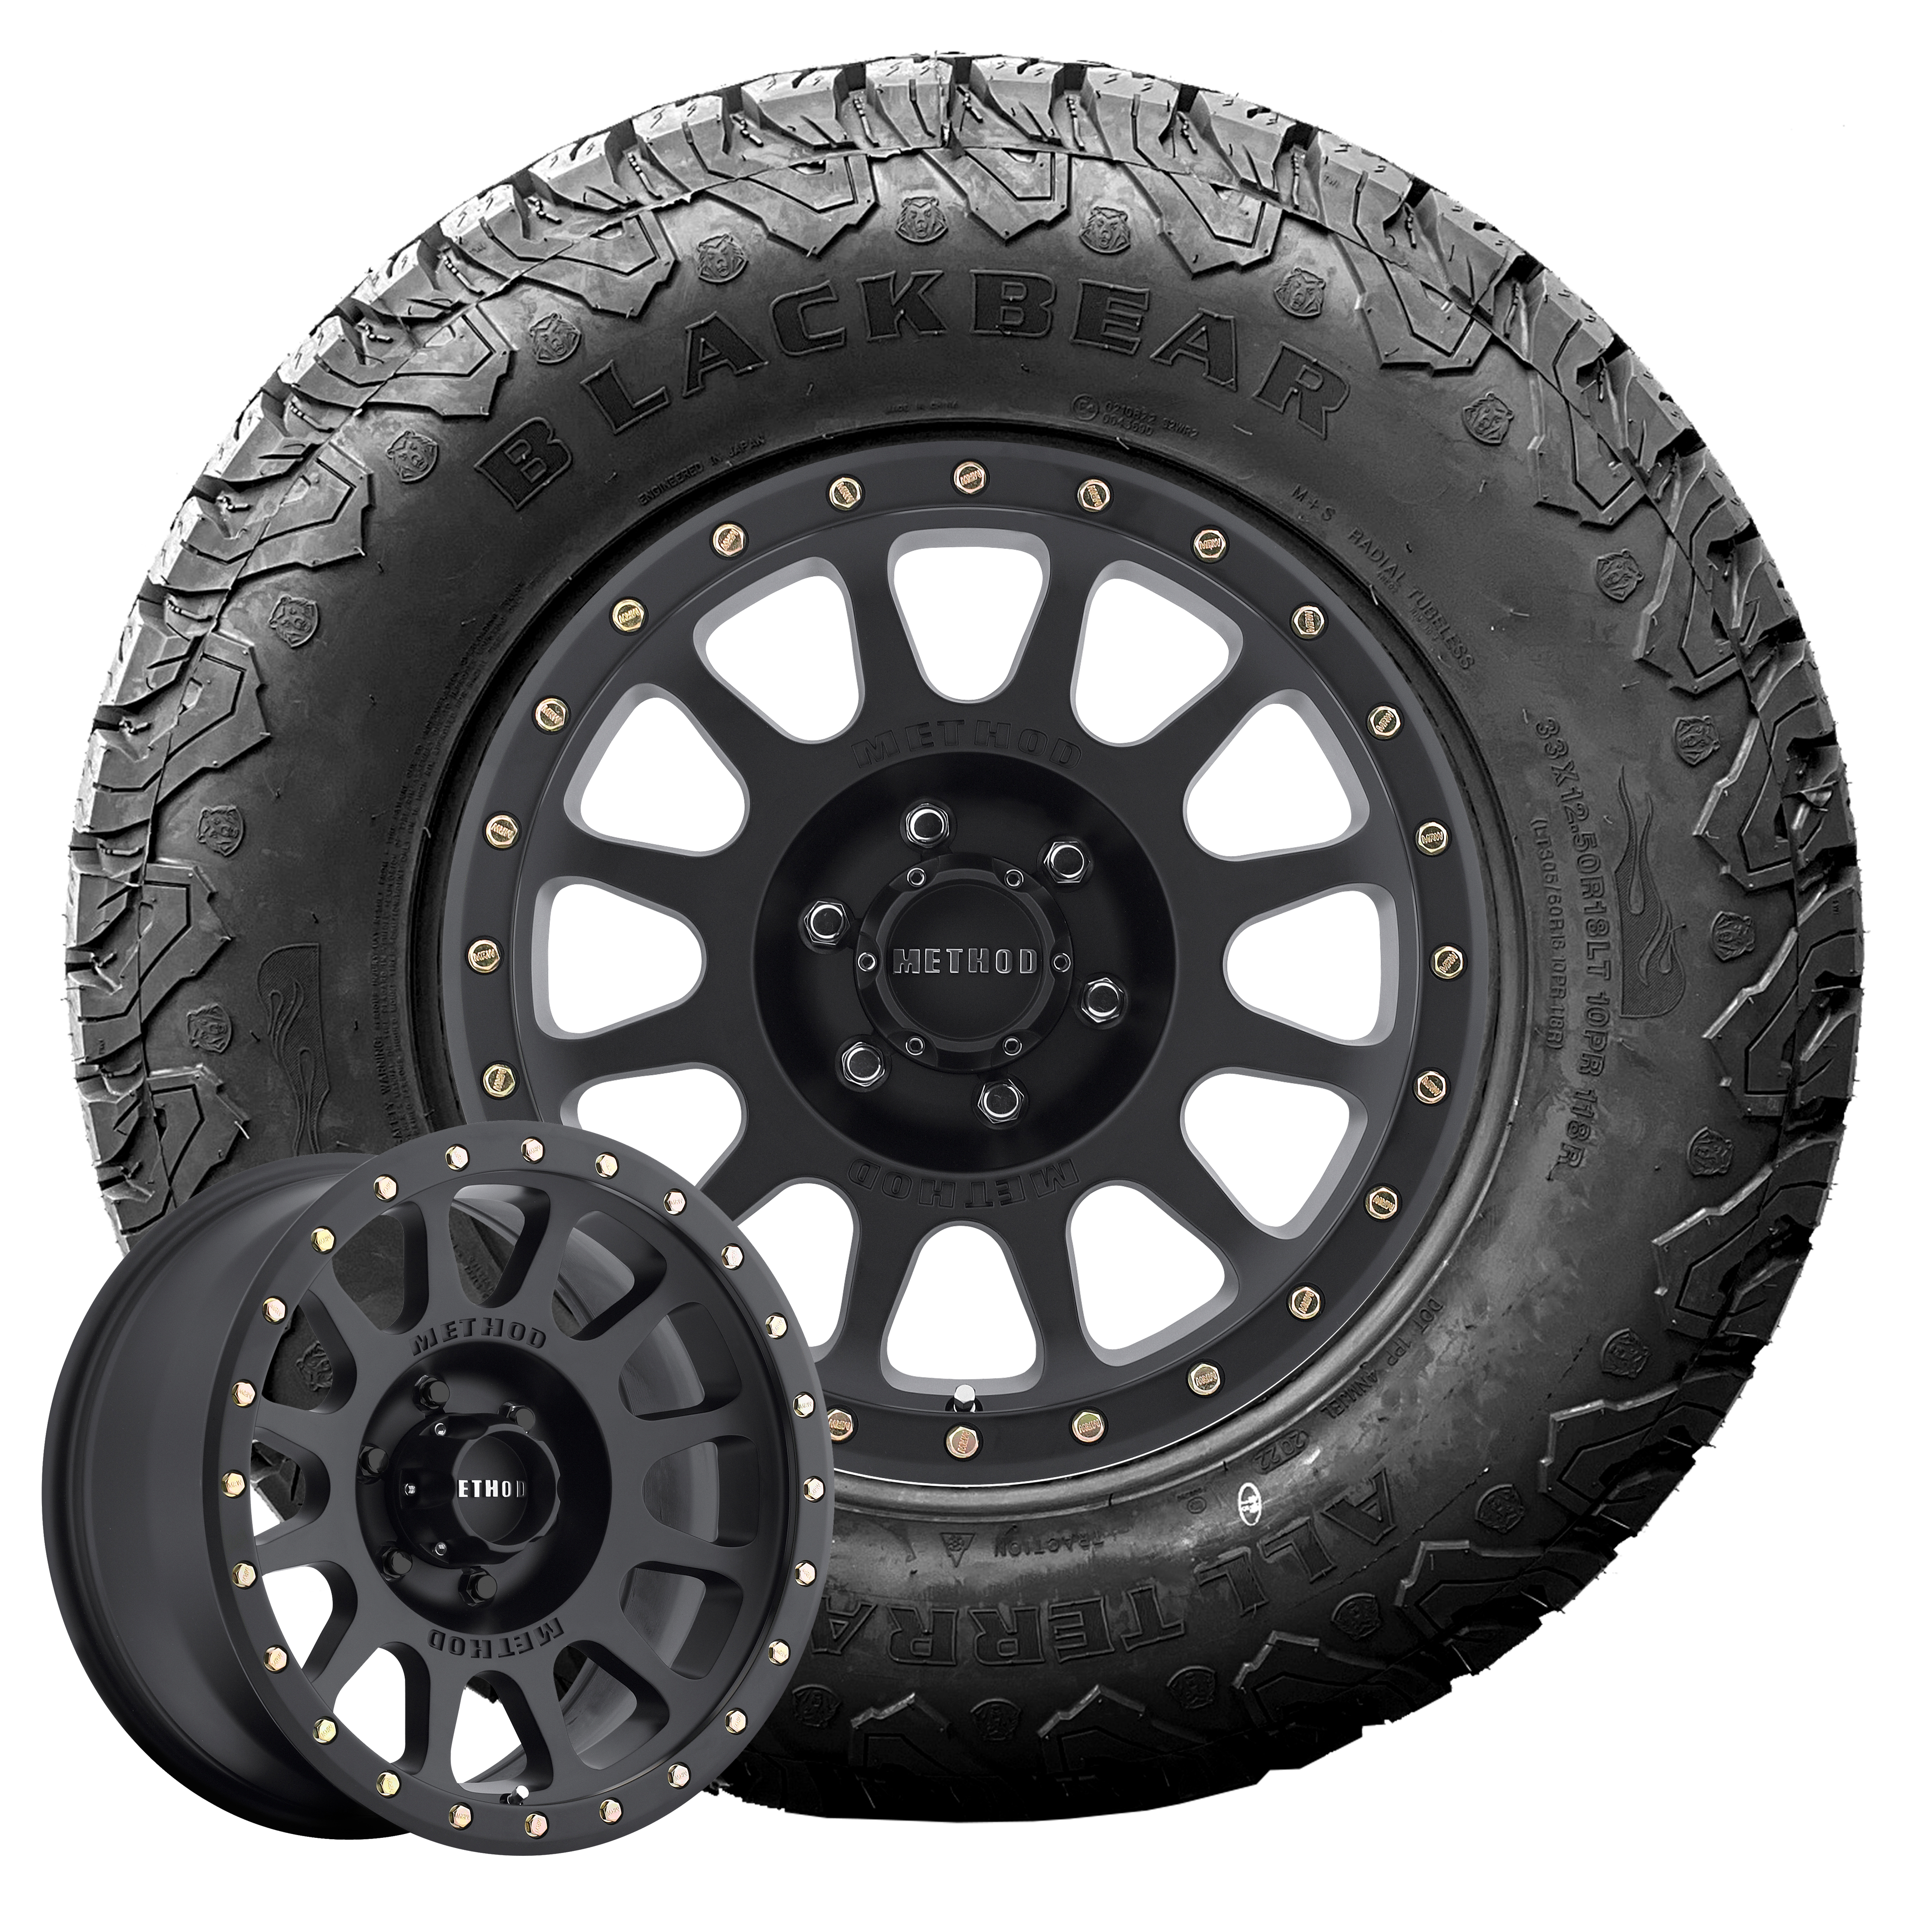 RAM 1500 DT Wheel & Tyre Package